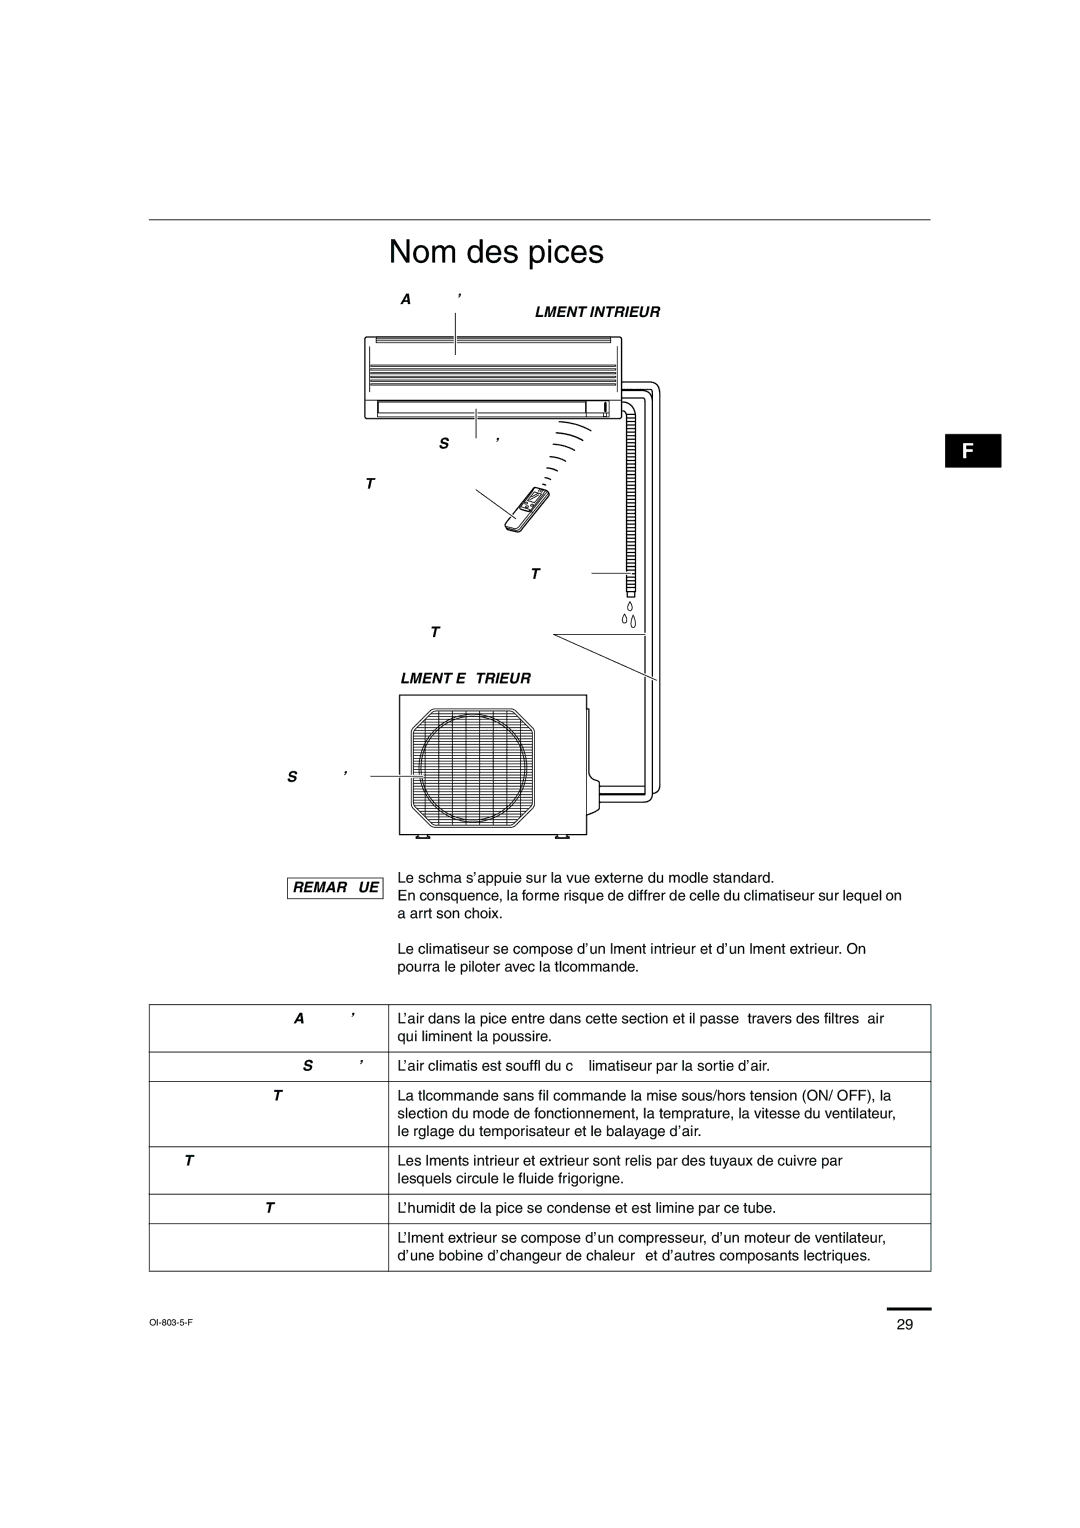 Sanyo KS1271 instruction manual Nom des pièces, Élément Intérieur, Élément Extérieur, Remarque 